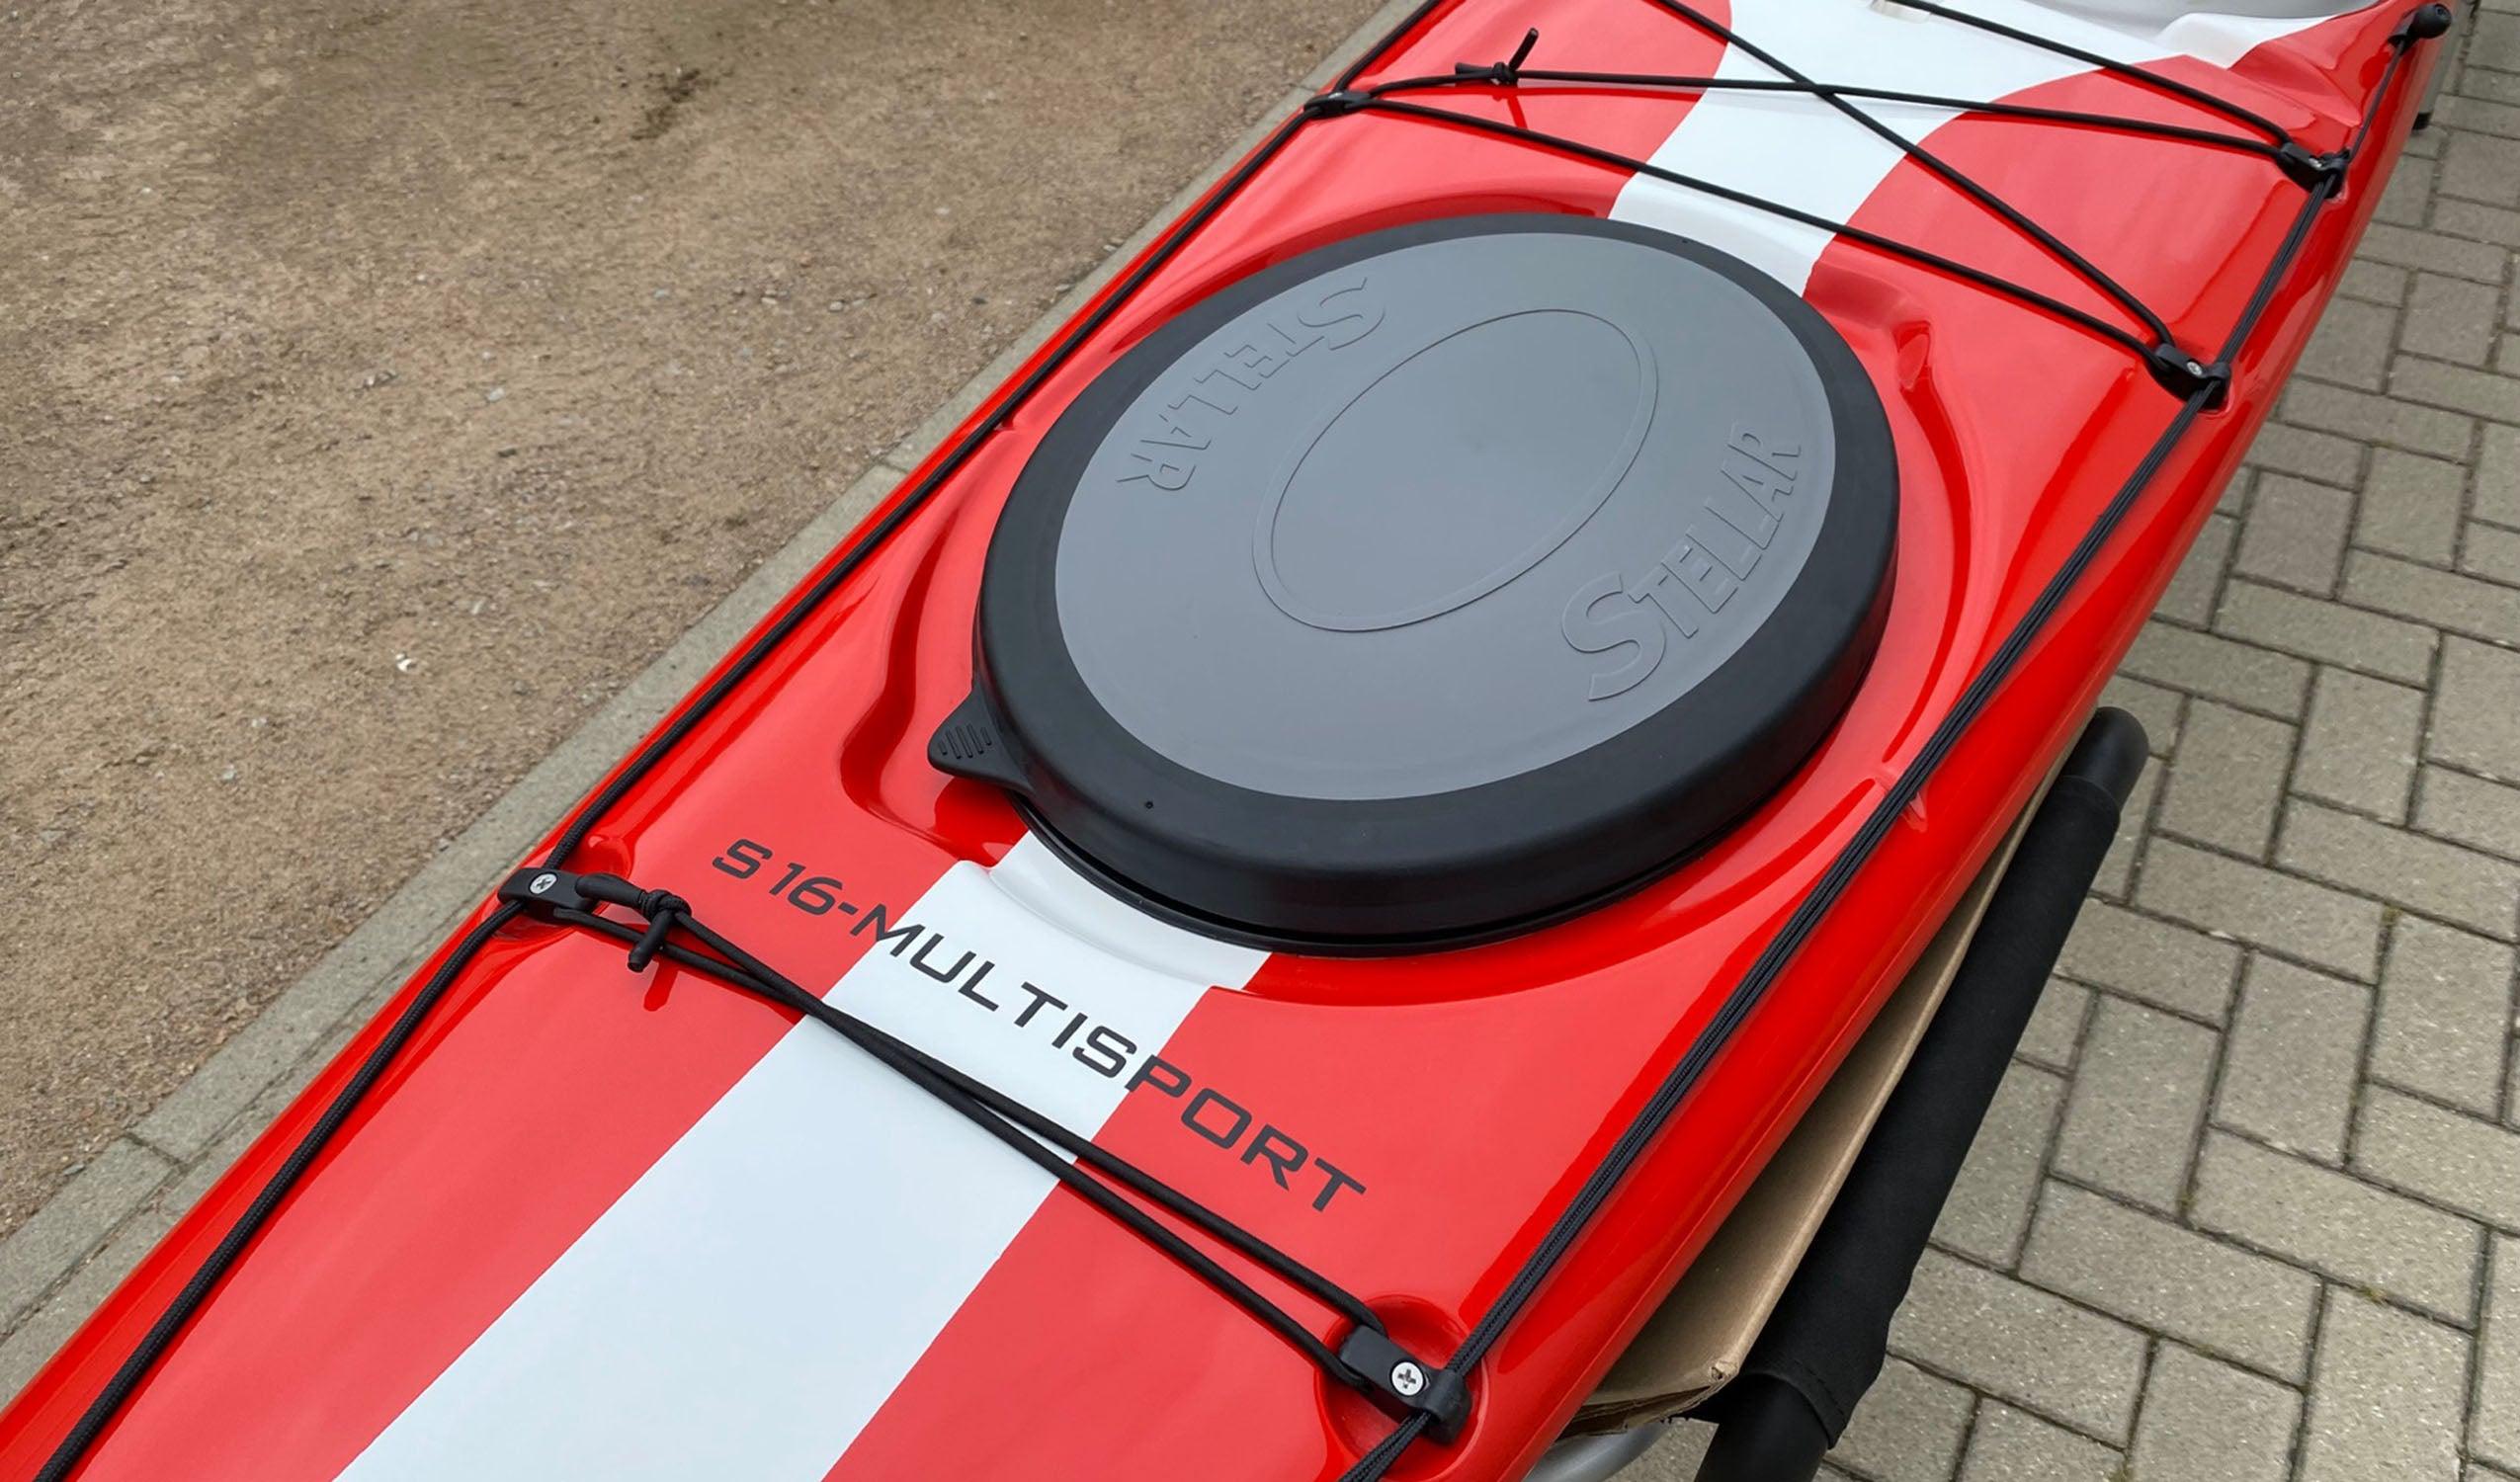 Produktbild von Kajak " S16 G2 Multisport-rot weiß " der Marke STELLAR Lightweight für 3190.00 €. Erhältlich online bei Lite Venture ( www.liteventure.de )